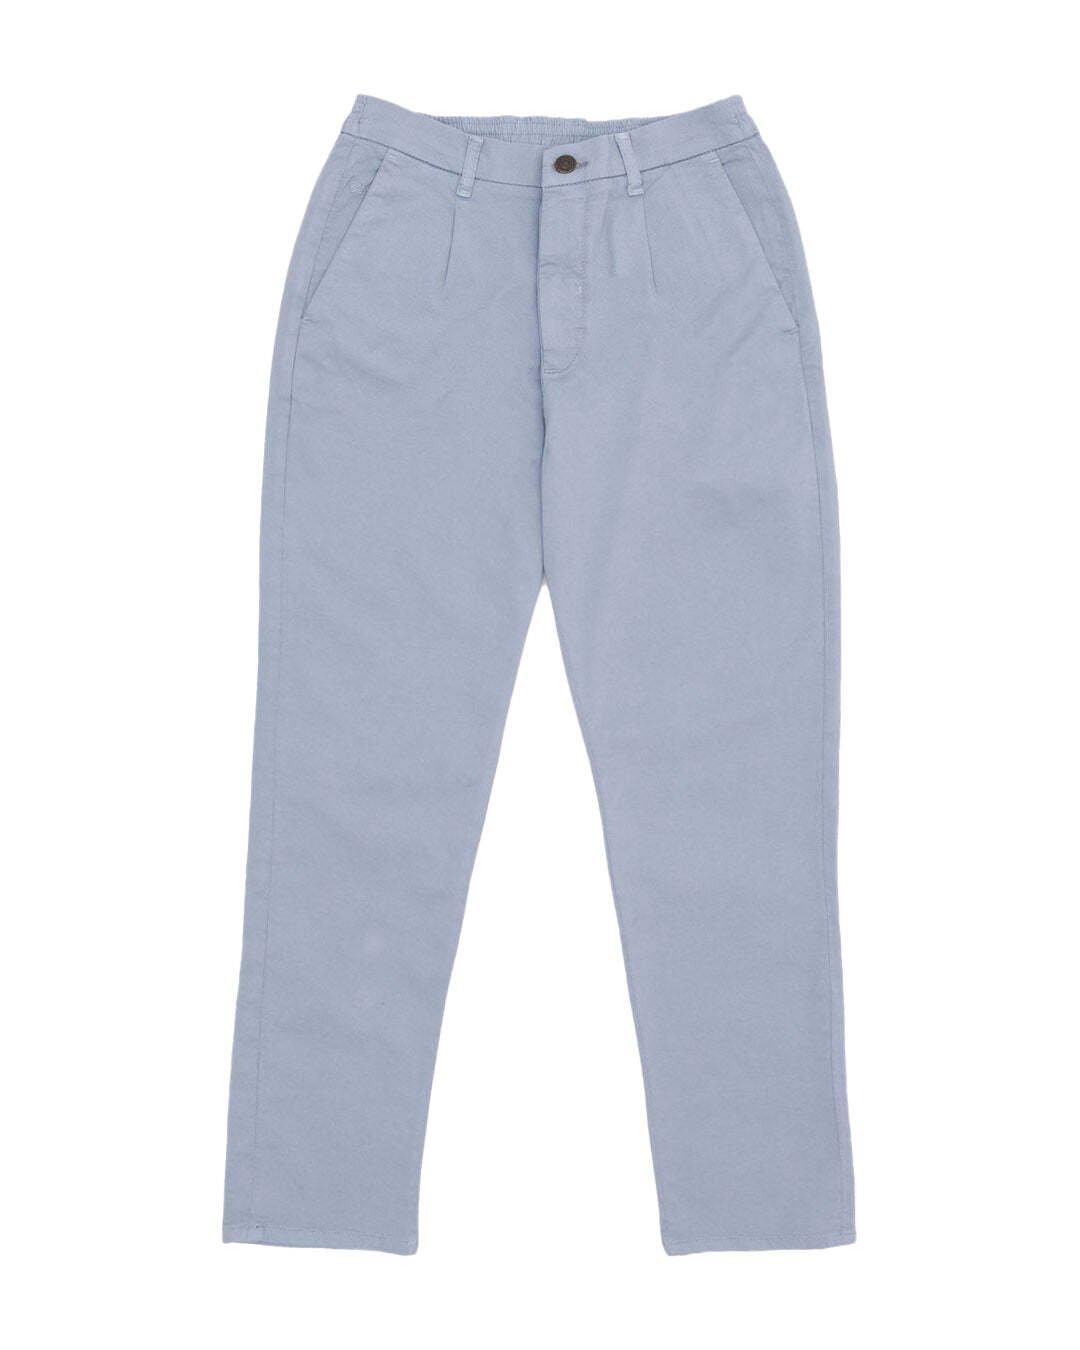 Hosen Pants Cropped Chino Herren Blau W36 von Colours & Sons